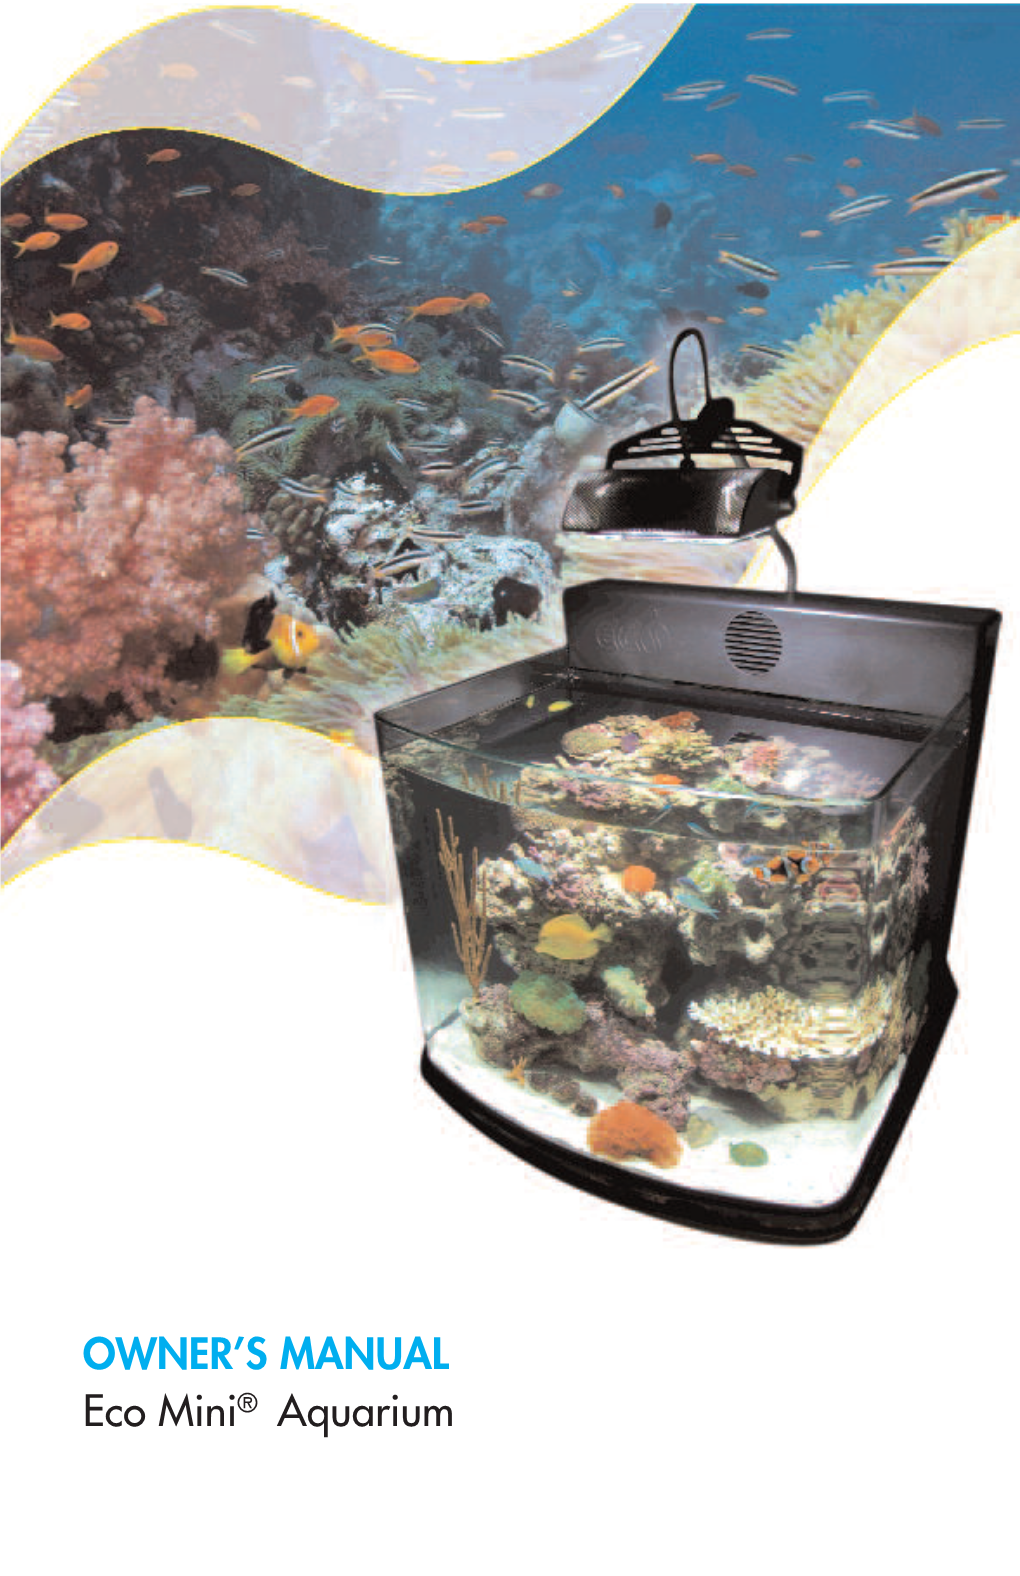 OWNER's MANUAL Eco Mini® Aquarium